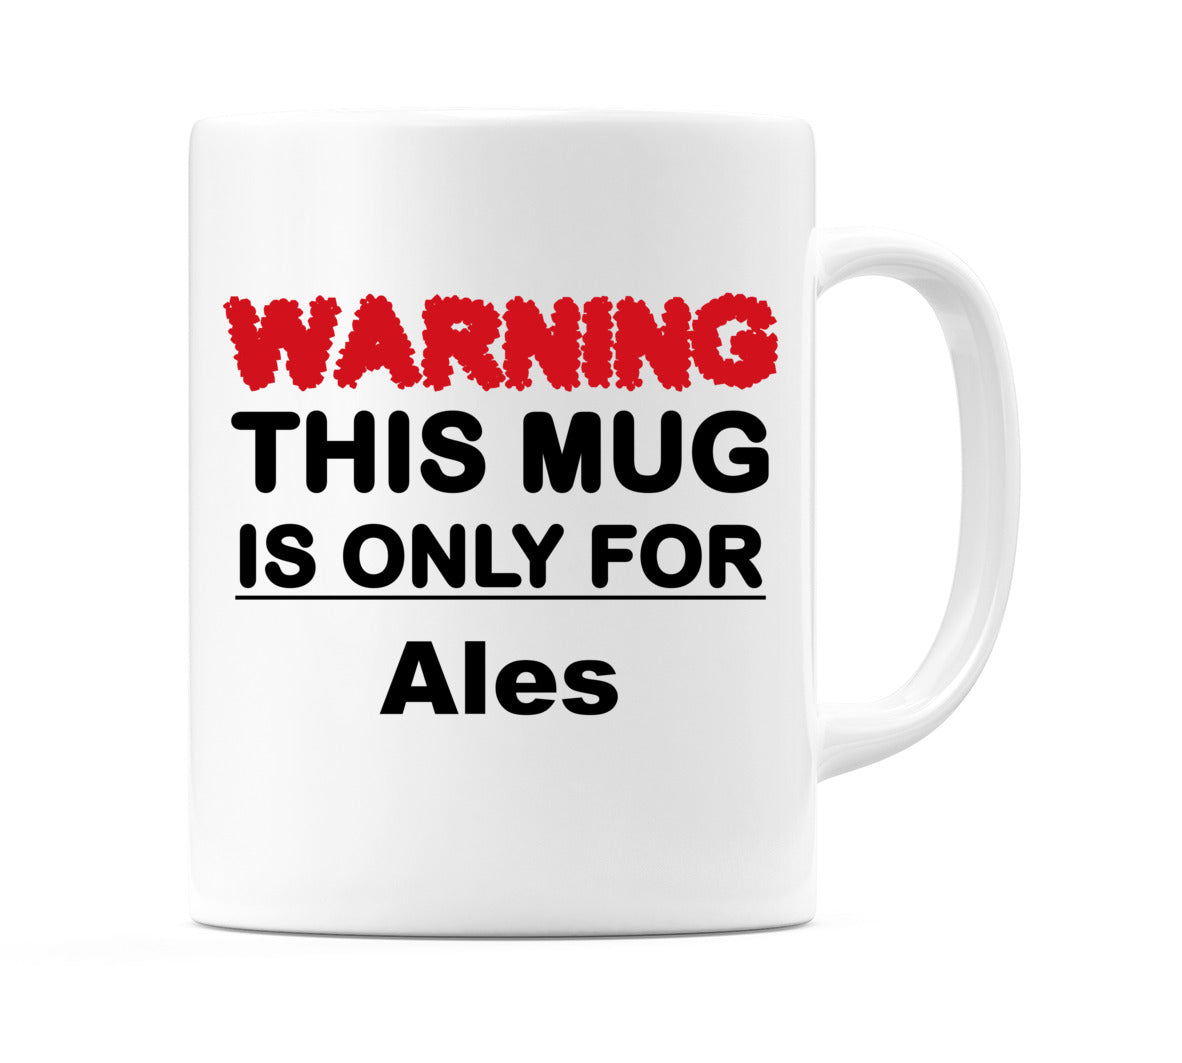 Warning This Mug is ONLY for Ales Mug